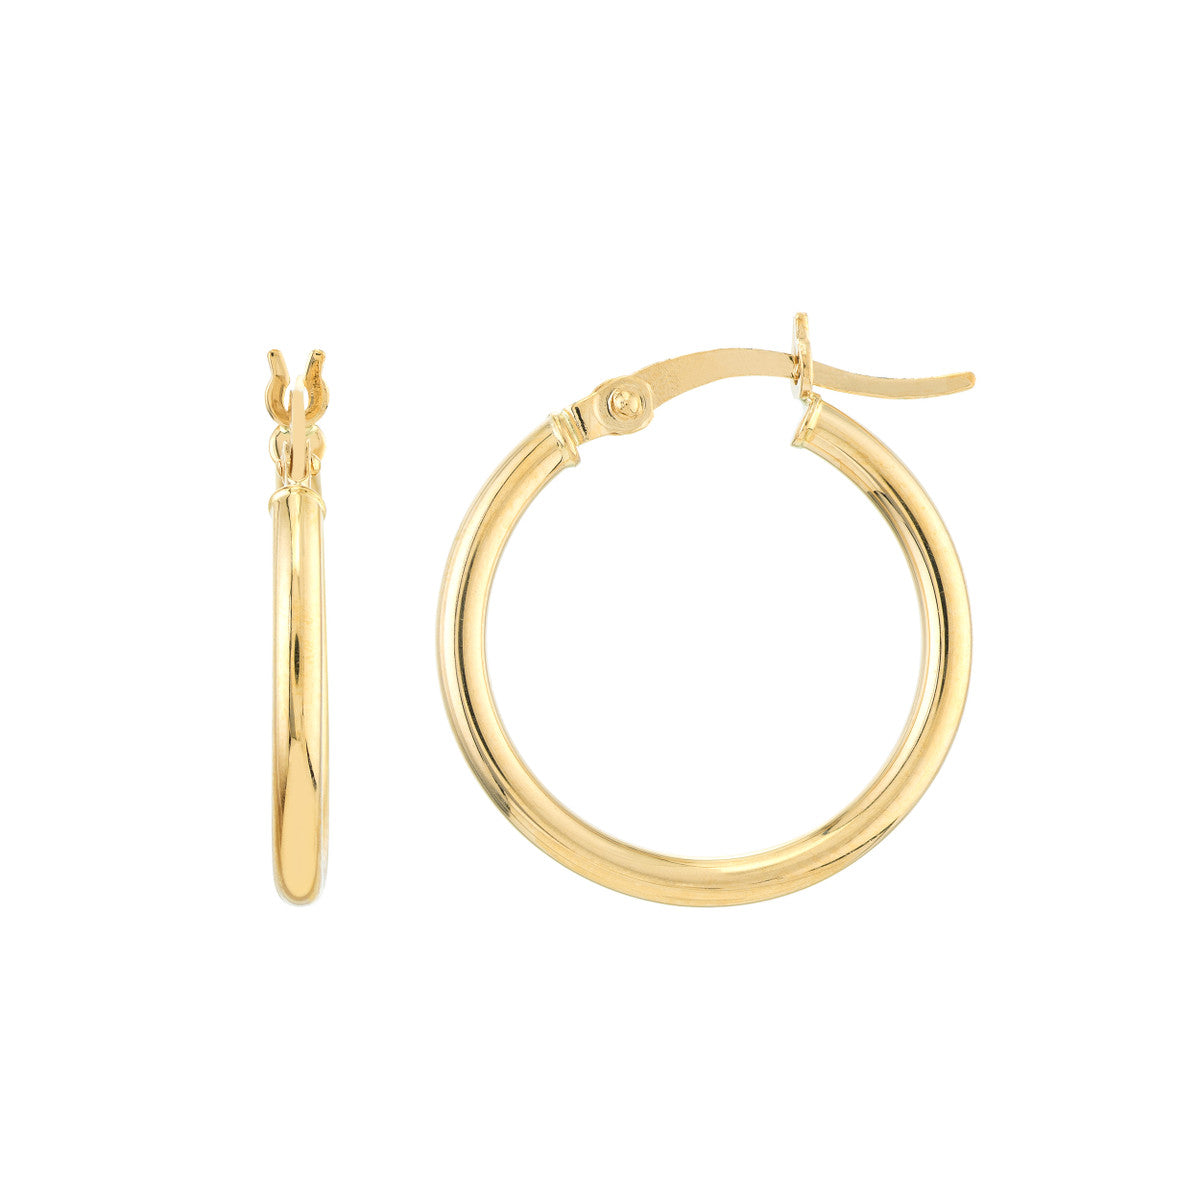 20mm Lightweight Hoop Earrings in Yellow Gold